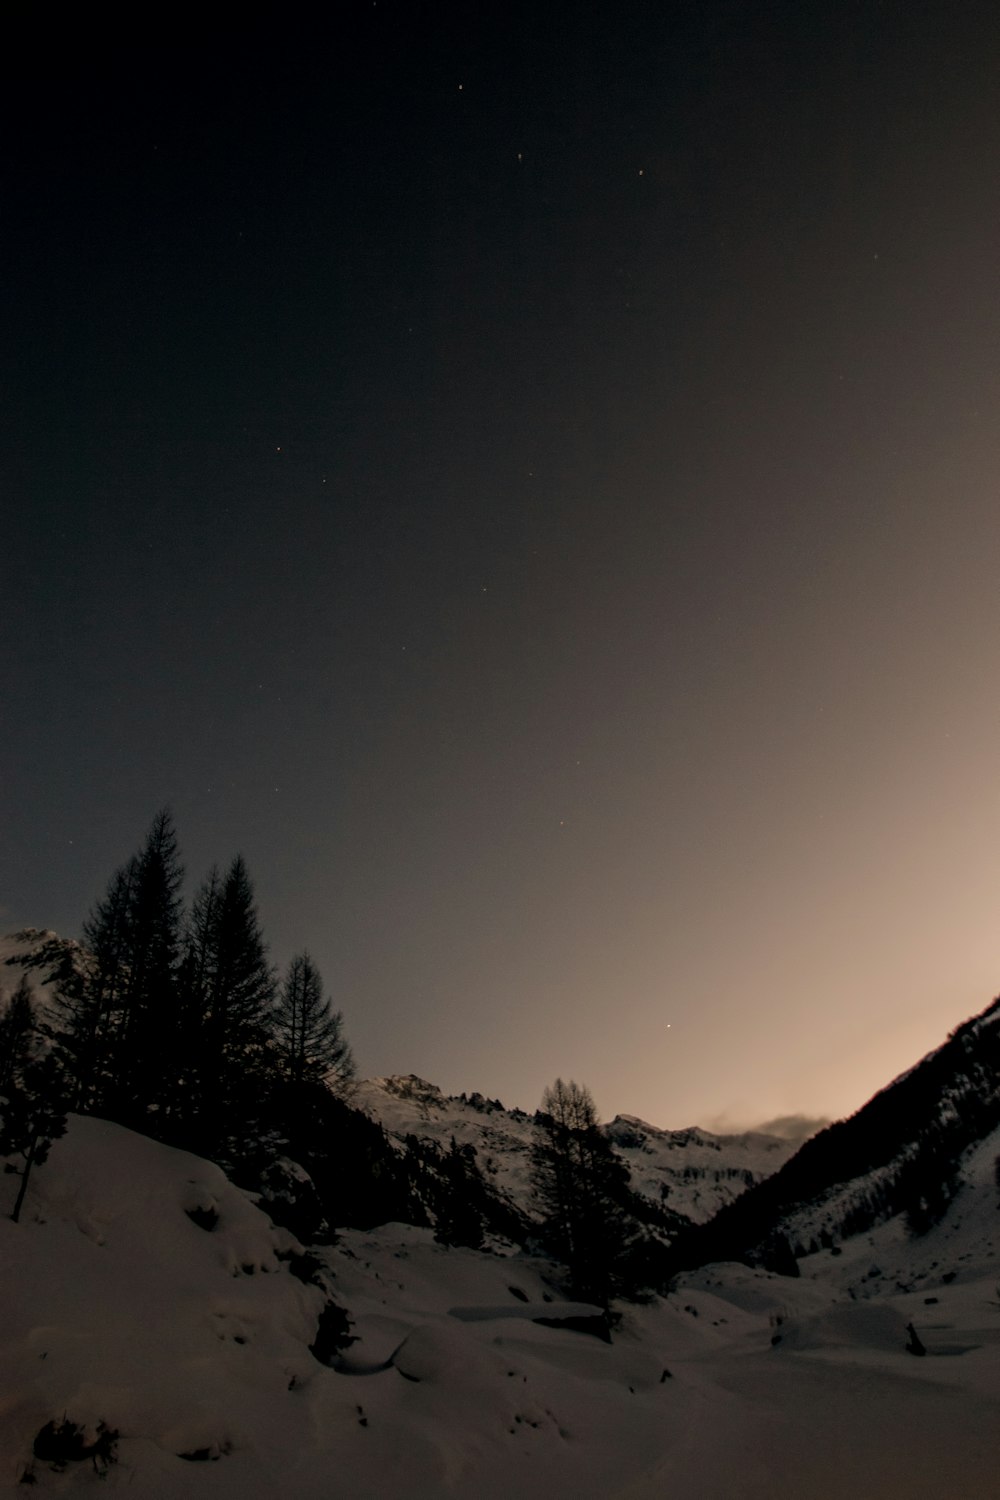 photographie de silhouette de pins dans les montagnes couvertes de neige